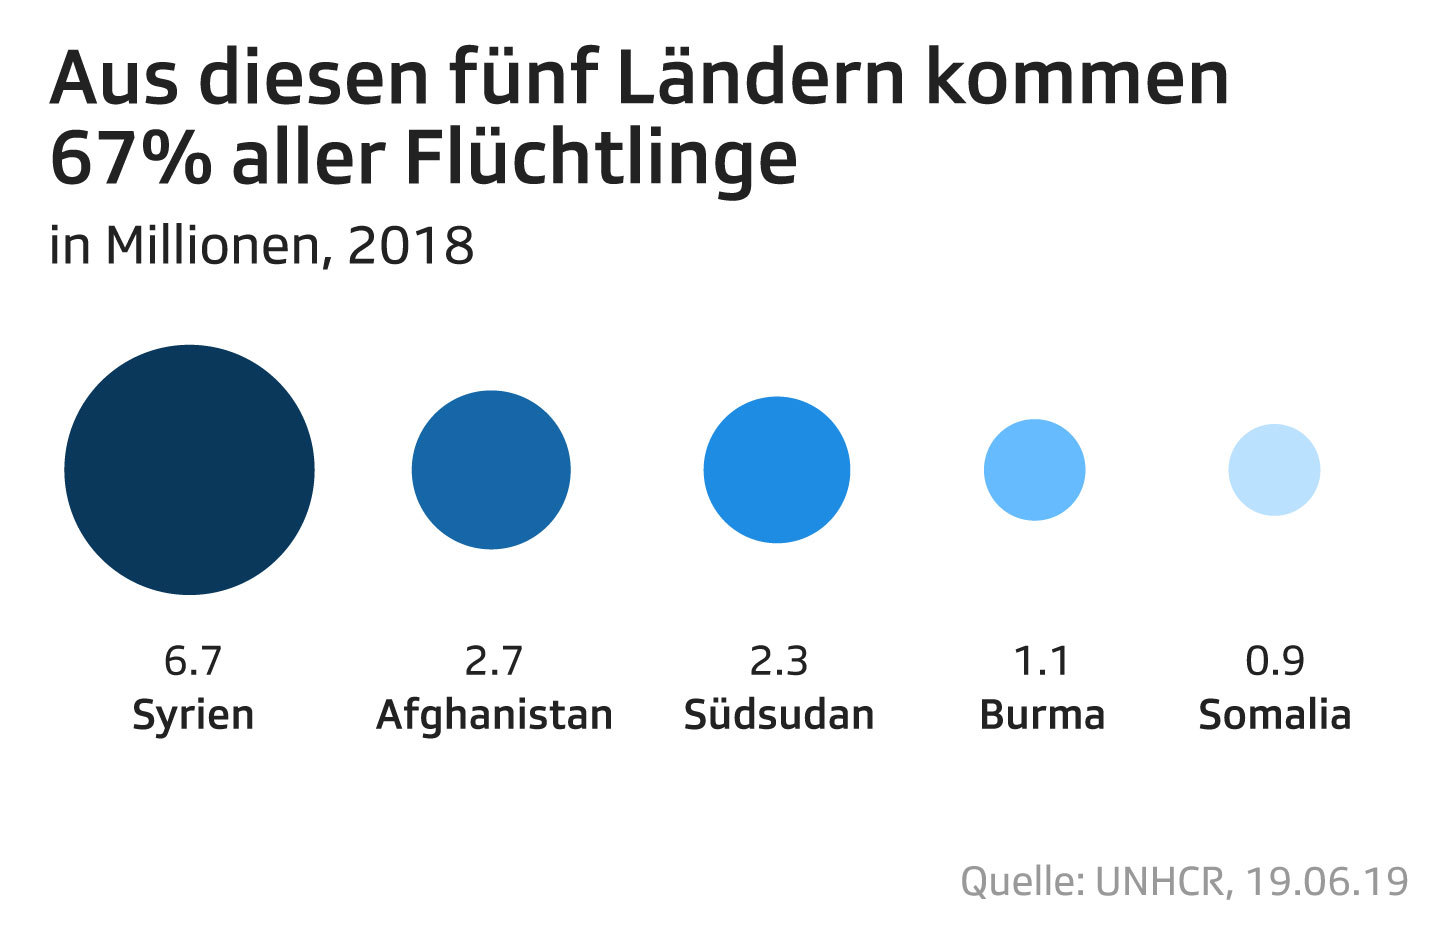 Aus diesen fünf Ländern kommen die meisten Flüchtlinge